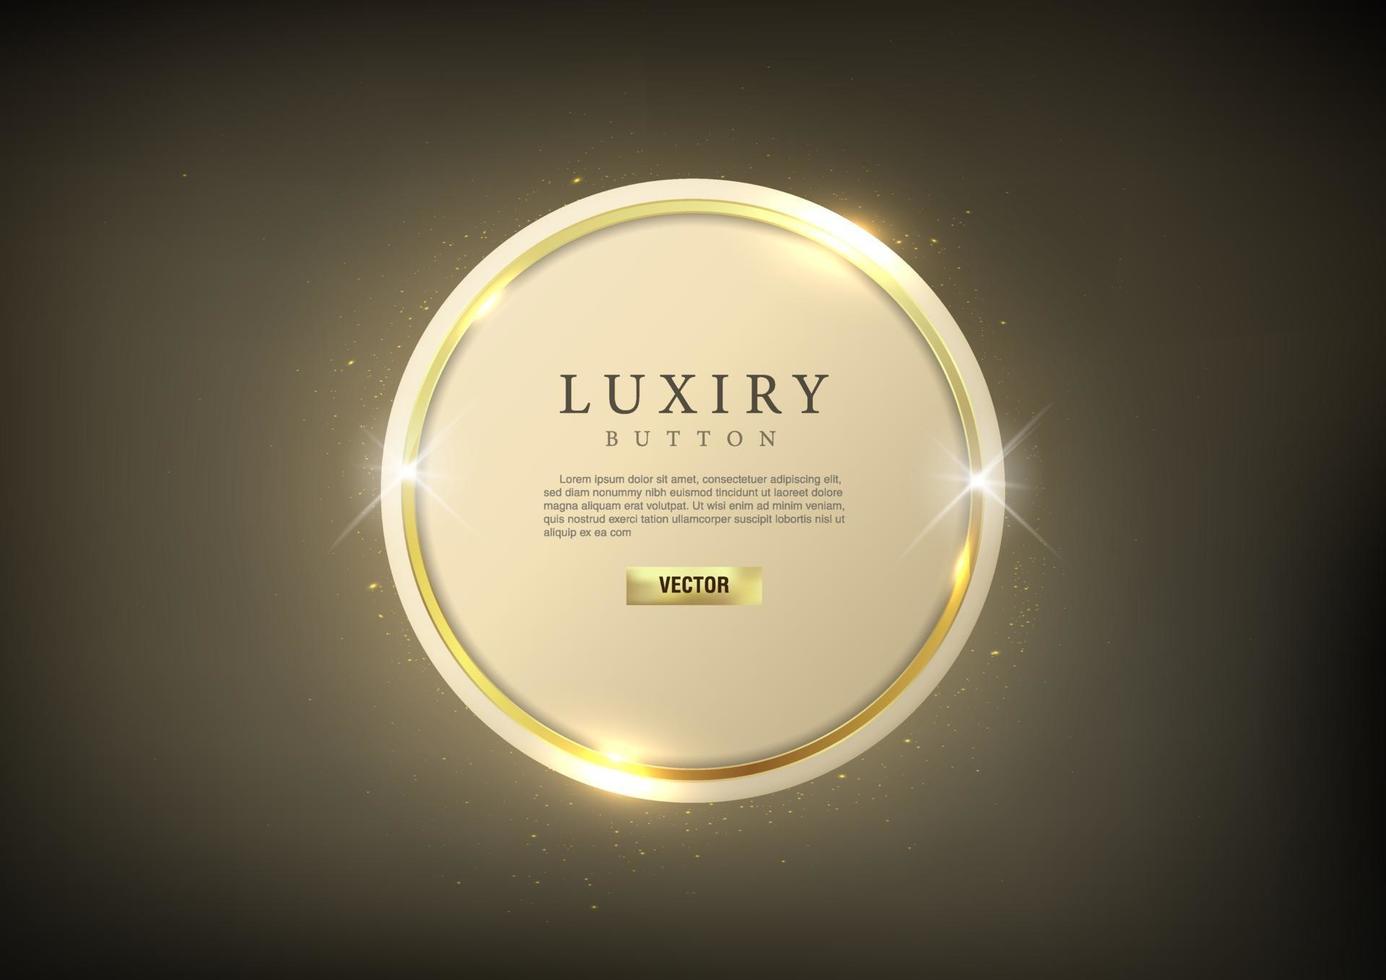 pulsante web cerchio di lusso lucido contorno oro vettore